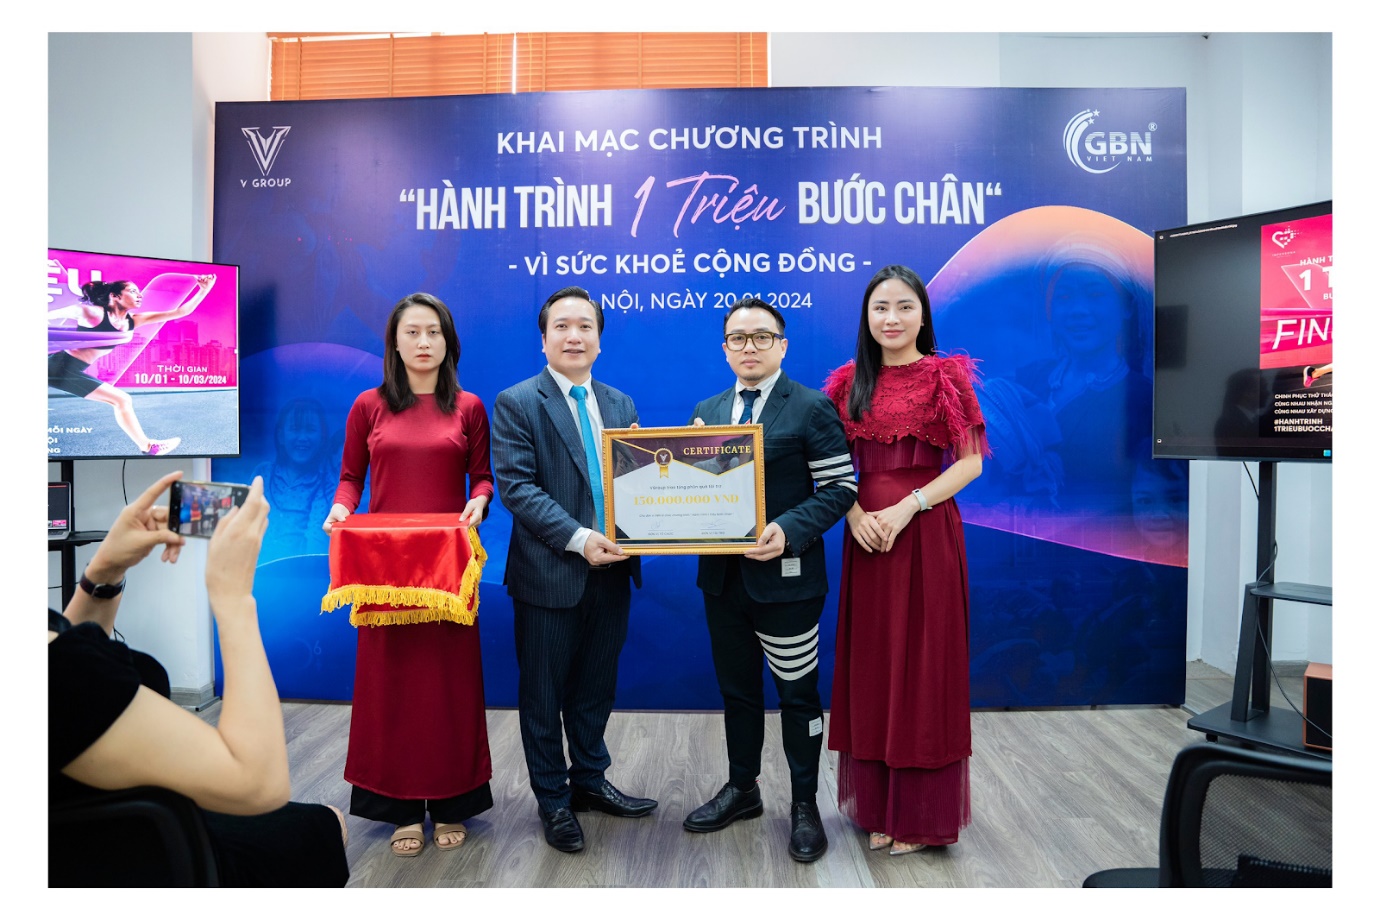 Tổ chức Doanh nhân GBN Việt Nam hân hạnh đồng hành cùng nhà tài trợ Vgroup trong chương trình “ Hành trình 1 triệu bước chân” (Ảnh: NVCC).